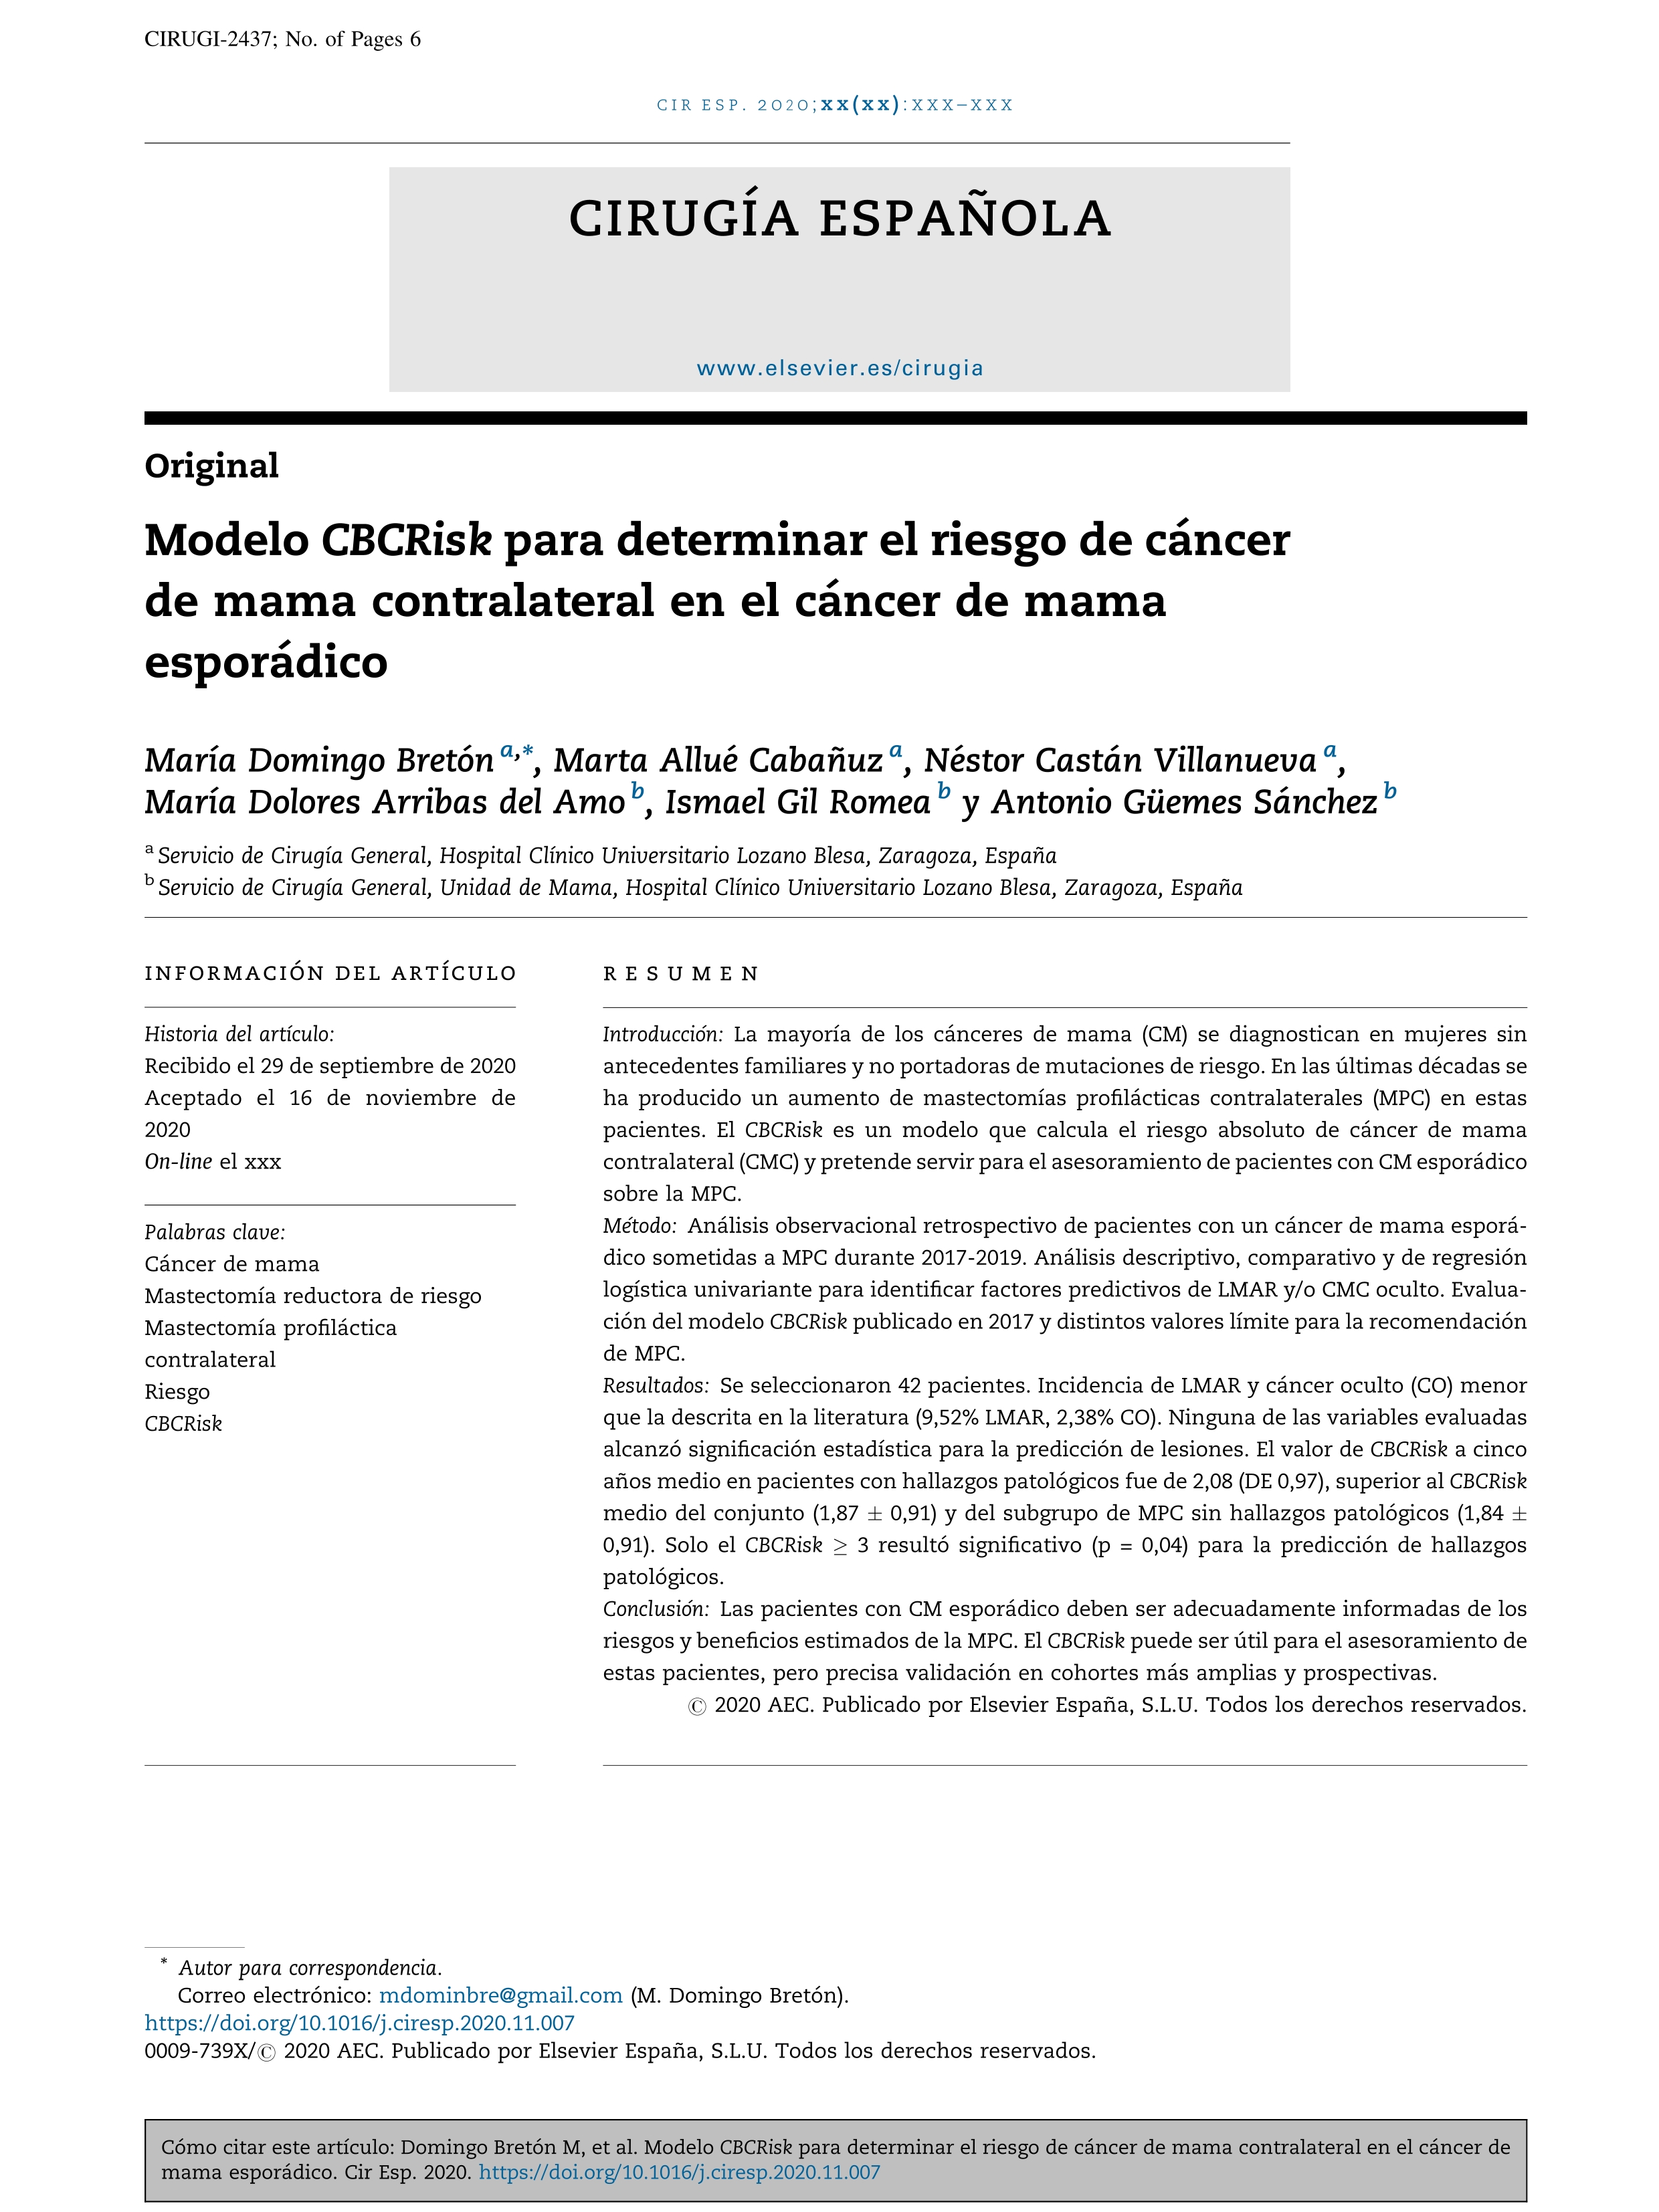 Modelo CBCRisk para determinar el riesgo de cáncer de mama contralateral en el cáncer de mama esporádico